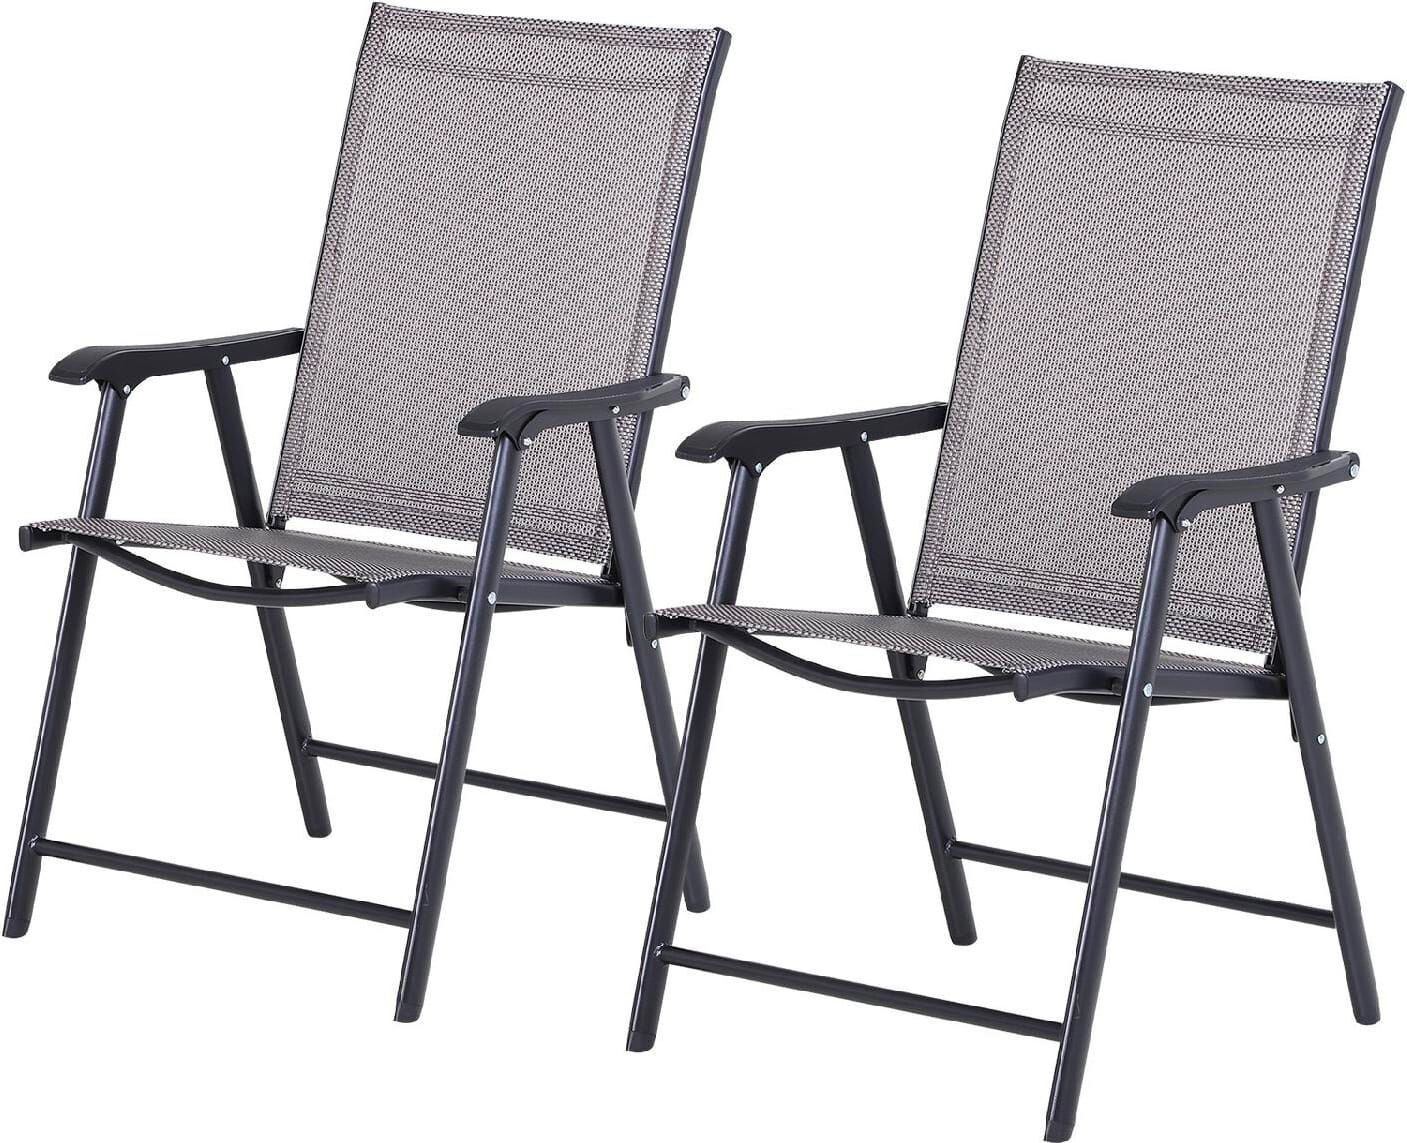 vivagarden 84b381gy sedie da giardino pieghevoli richiudibili set 2 pezzi in acciaio e textilene colore grigio nero - 84b381gy